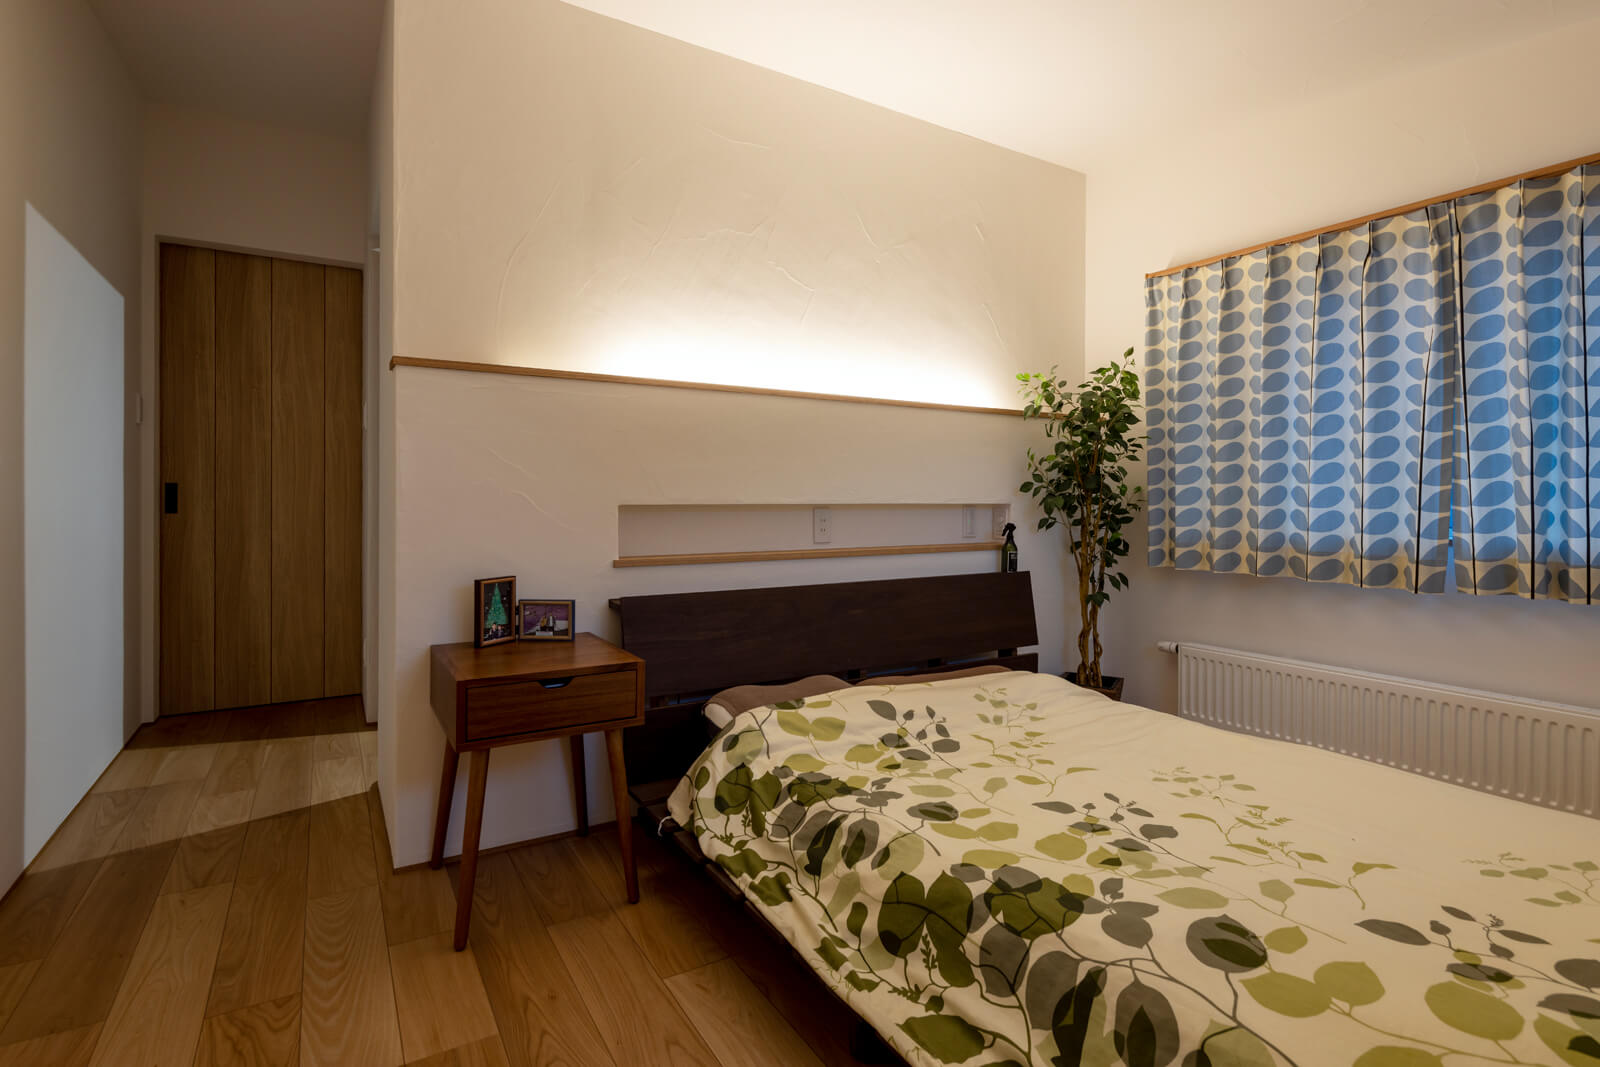 ベッドのヘッドボードにLED照明を組み込み、壁面を照らした寝室の間接照明